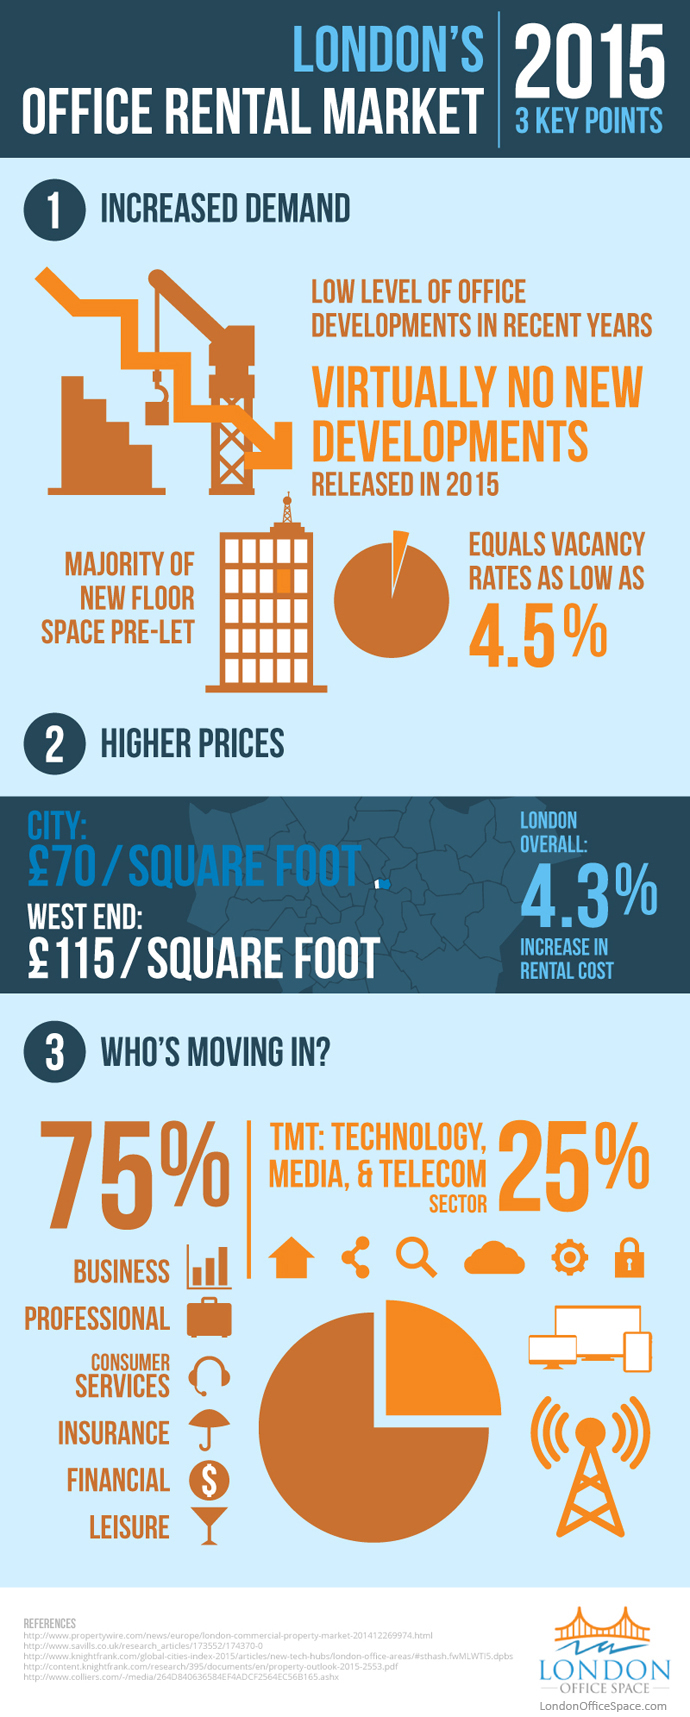 London's Office Rental Market 2015